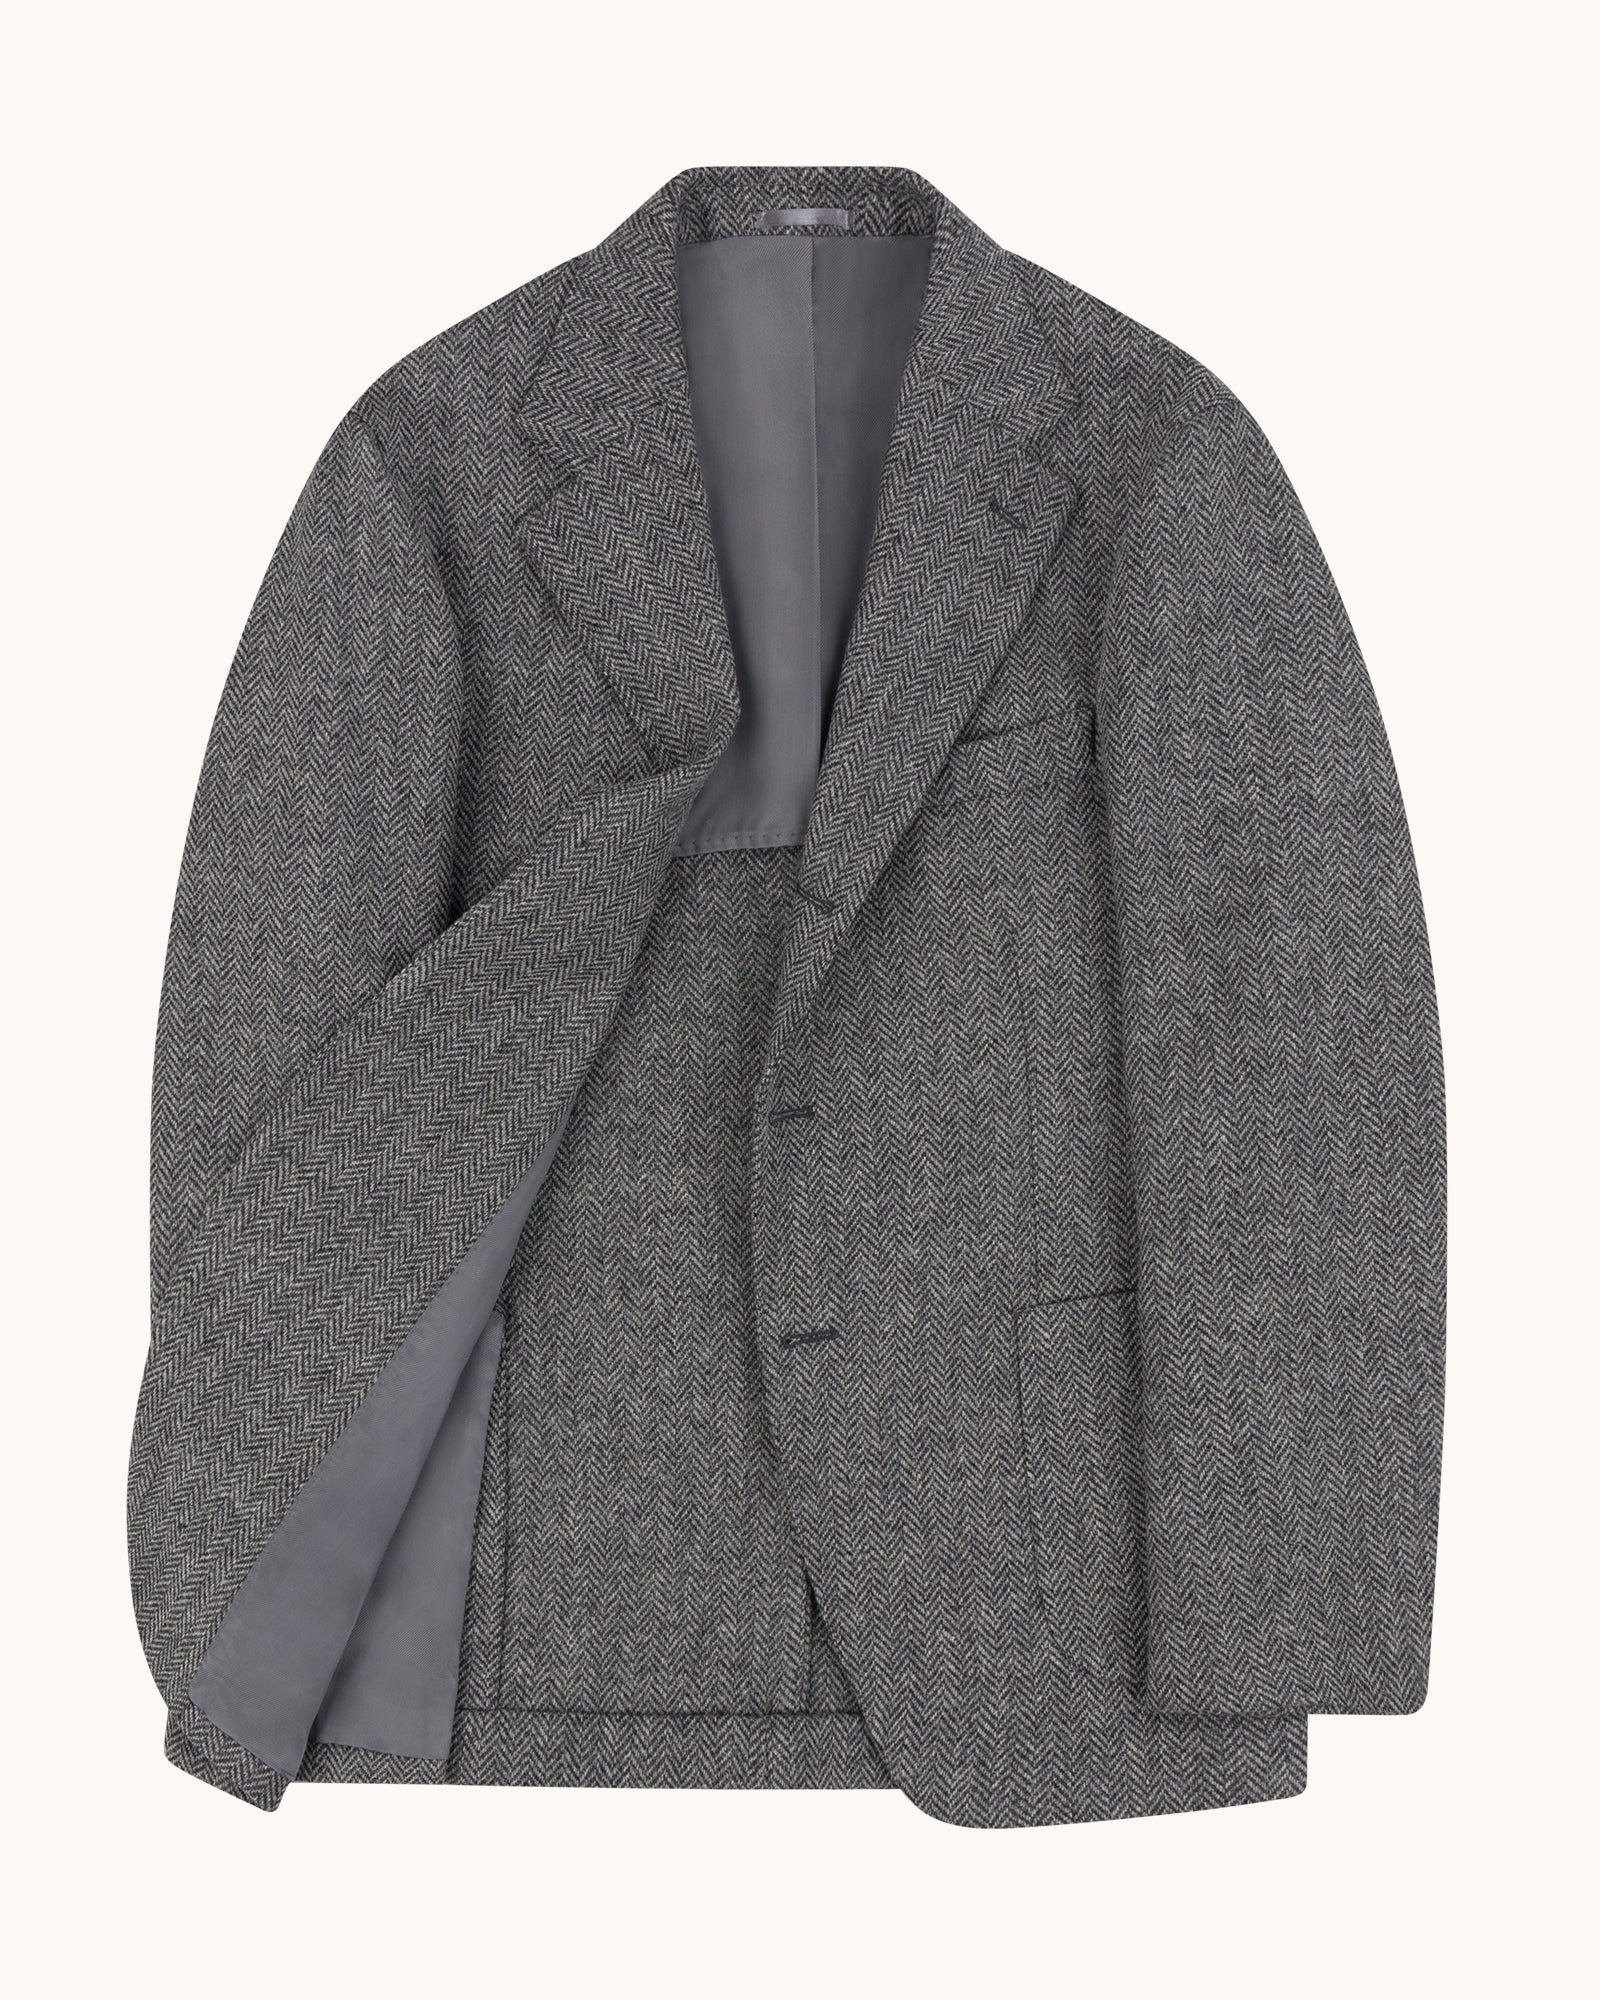 Sport Jacket - Grey Herringbone Wool